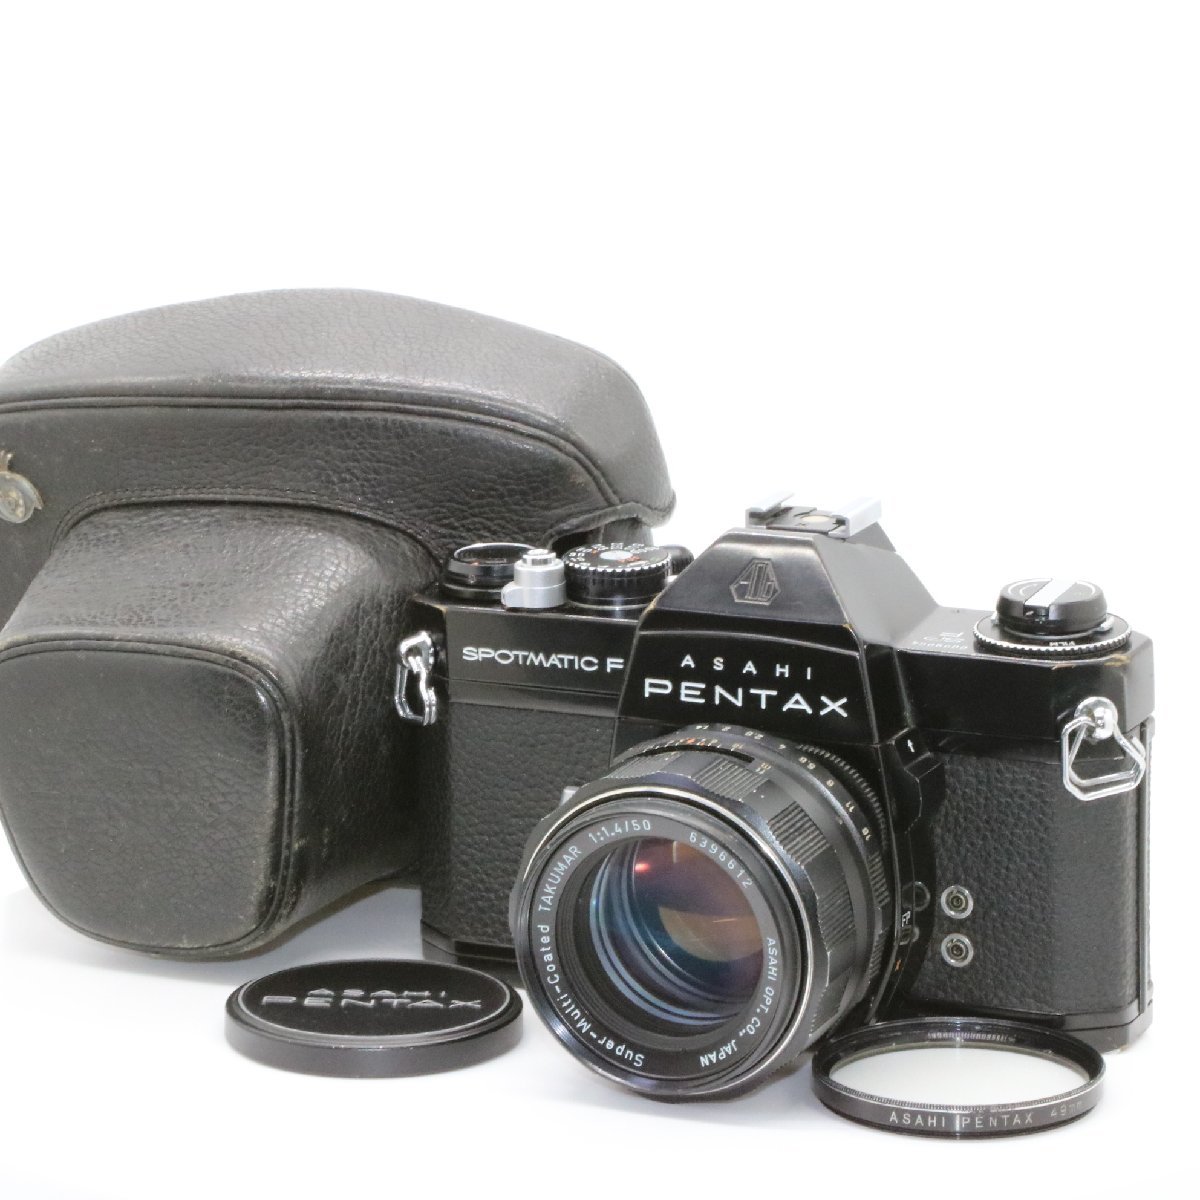 良品 ASAHI PENTAX SPOTIMATIC F SPF ブラック 一眼レフフィルムカメラ Super Muti Coated Takumar 50mm f1.4 標準 単焦点 オールドレンズ